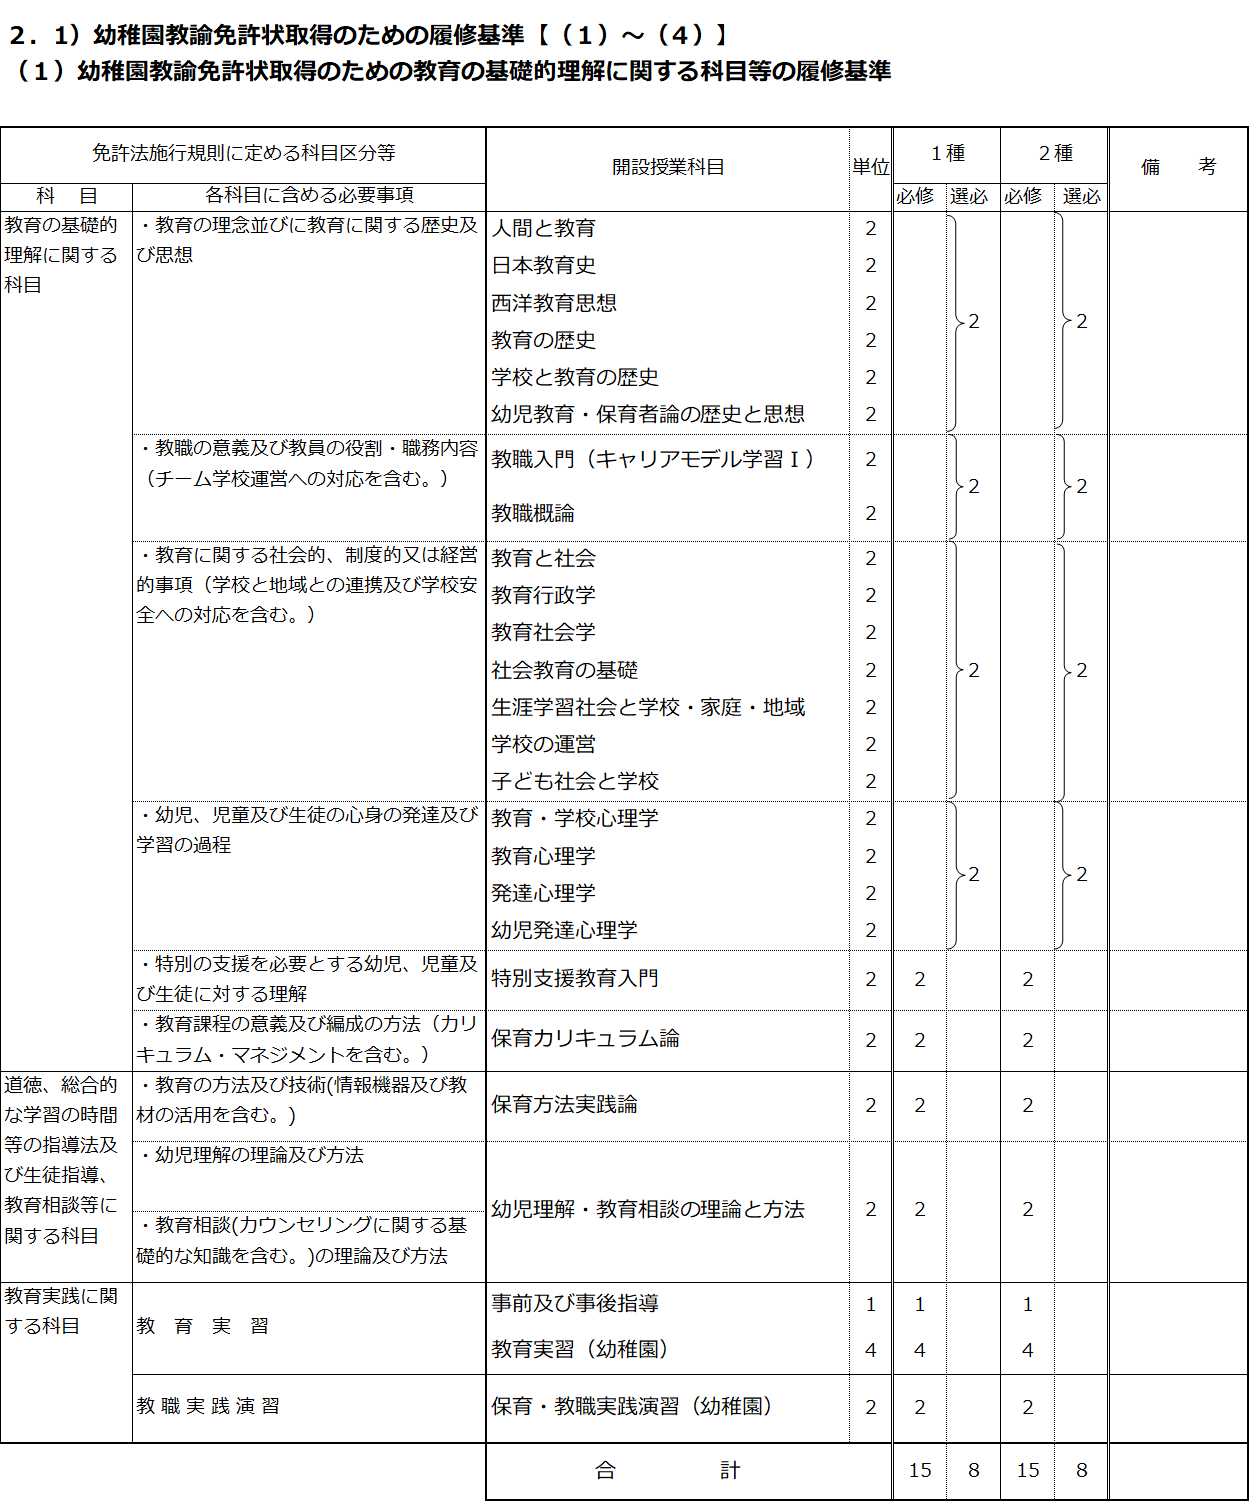 http://kyoumu.adb.fukushima-u.ac.jp/guide/2020/hdc/Files/2021/04/542014c2d4c7e92f1164dda3521dcd84.png